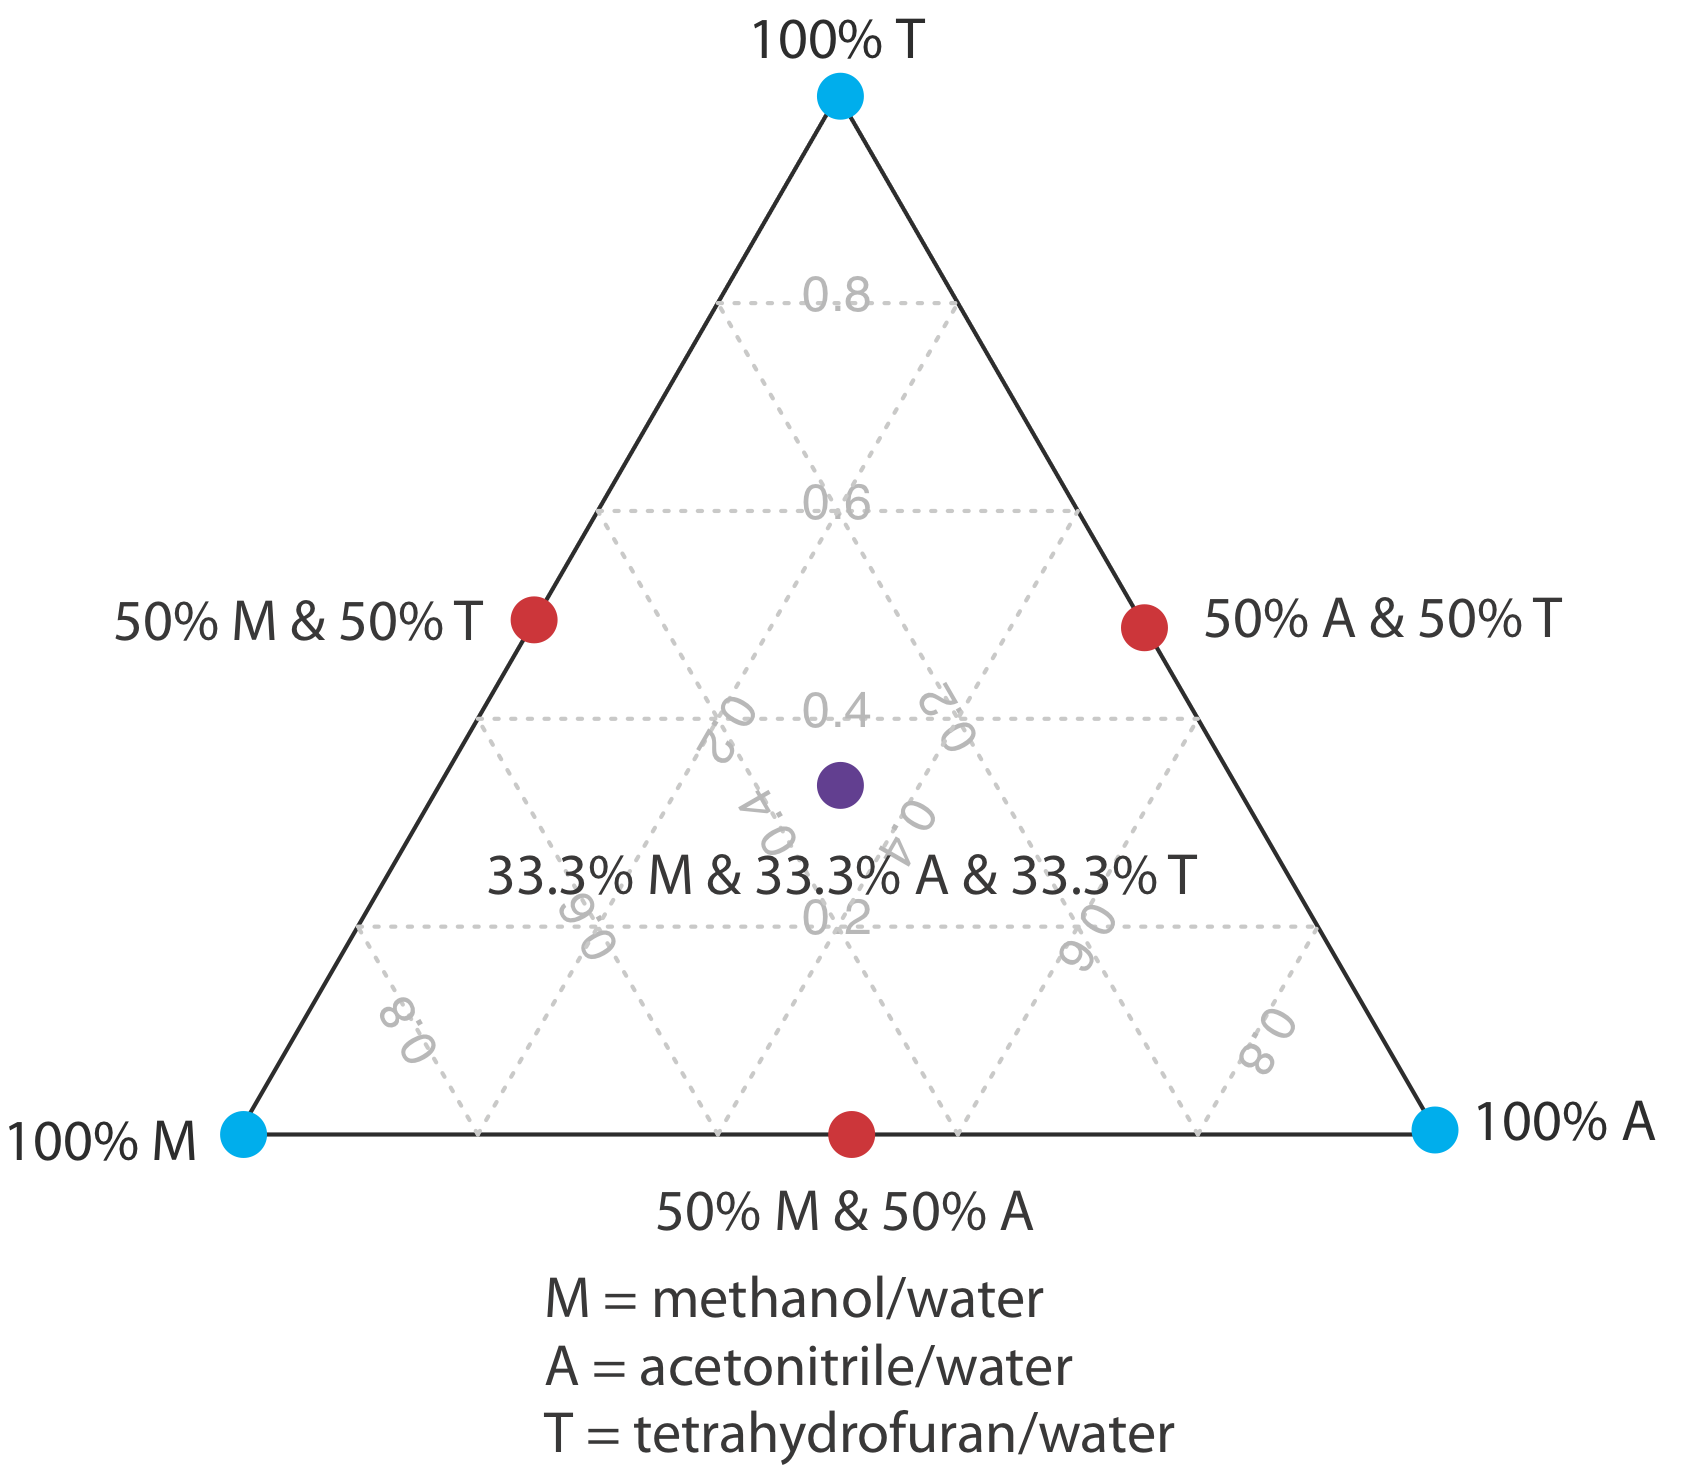 Los tres puntos del triángulo son fases móviles consistentes en tetrahidrofurano y agua. Los lados del triángulo son fases móviles binarias creadas al combinar volúmenes iguales de metanol/agua y tetrahidrofurano/agua. El centro del triángulo contiene las tres fases móviles puras y consiste en partes iguales metanol/agua, acetonitrilo/agua y tetrahidrofurano/agua.